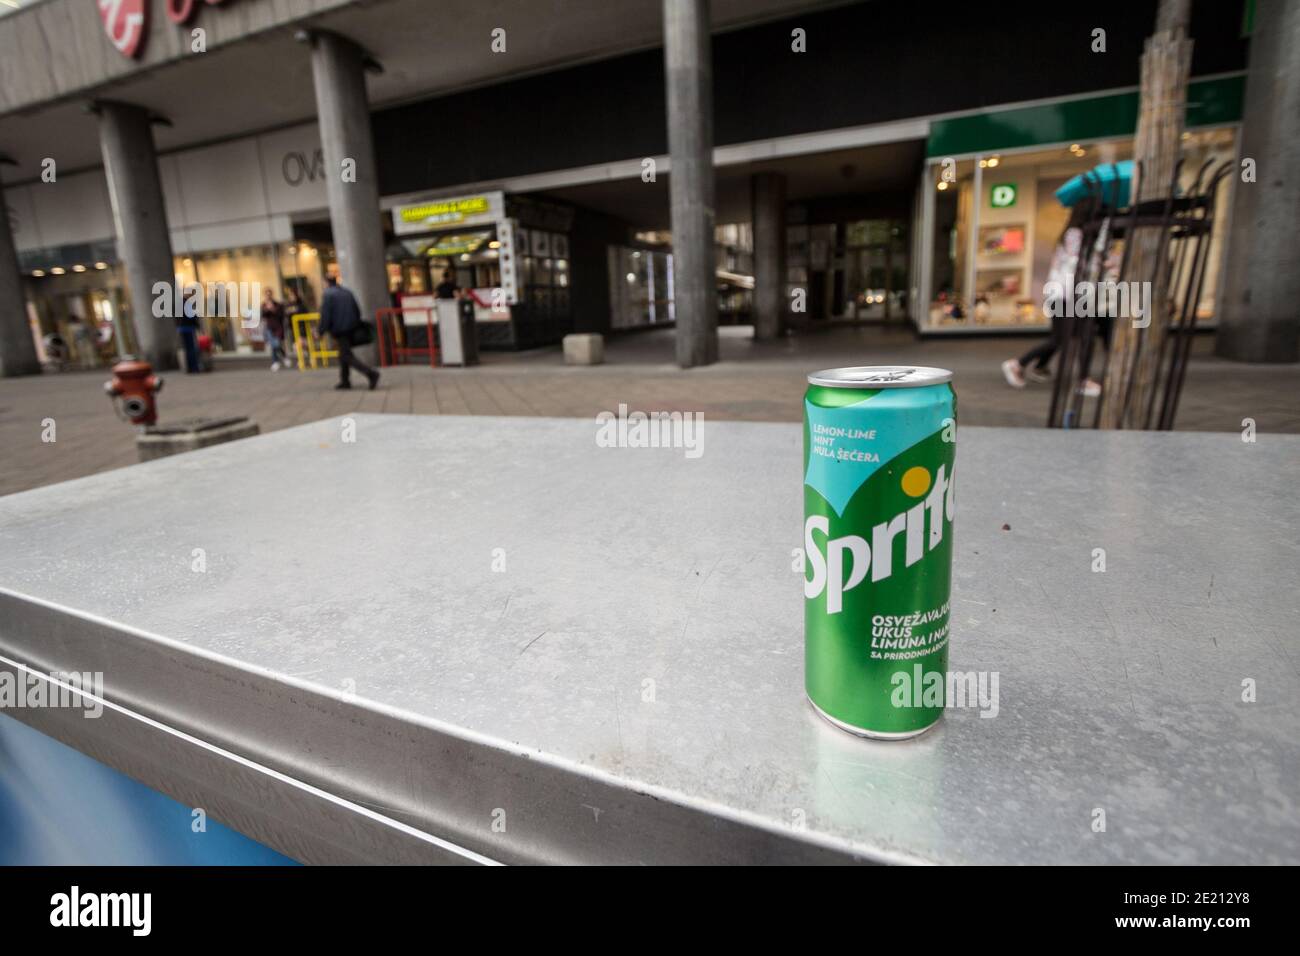 BELGRADO, SERBIA - 30 MAGGIO 2018: Logo Sprite su lattine in una strada. Sprite è una marca di limonata e di soda di limoni, parte della Coca Cola Foto Stock